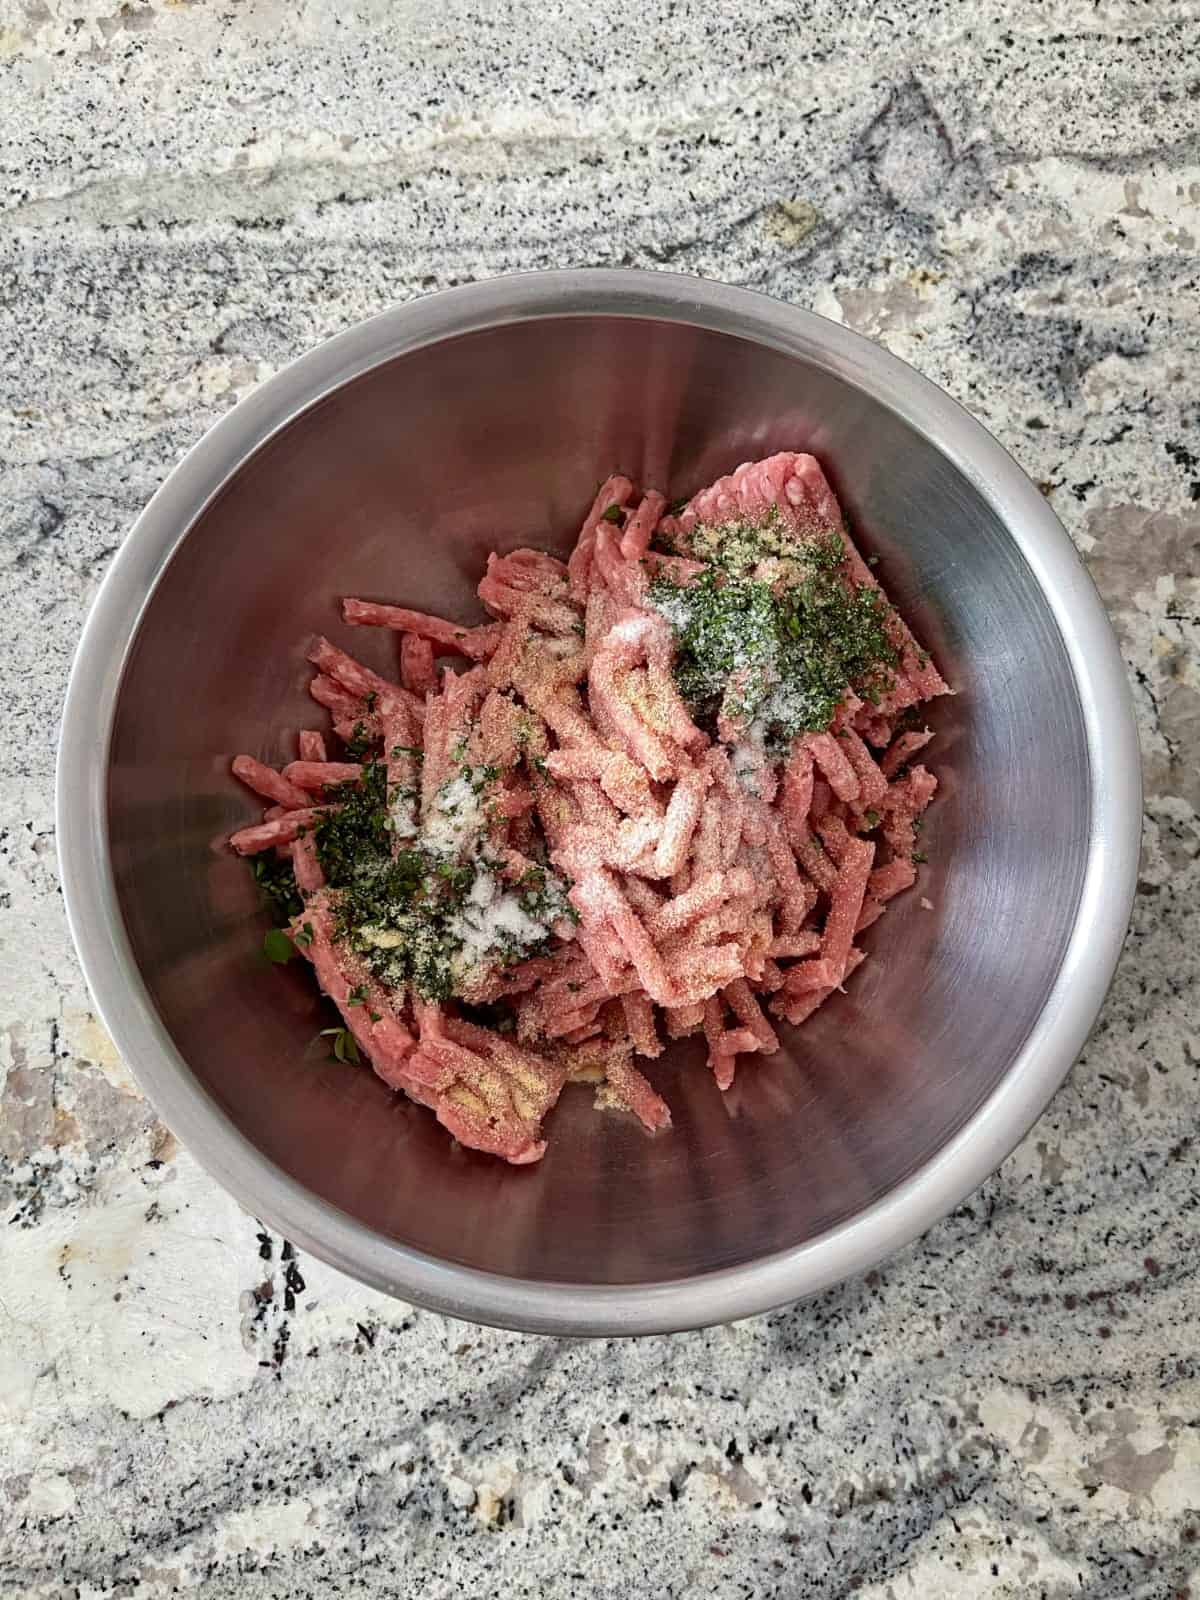 Ground pork, garlic powder, sea salt, sage and thyme in mixing bowl.